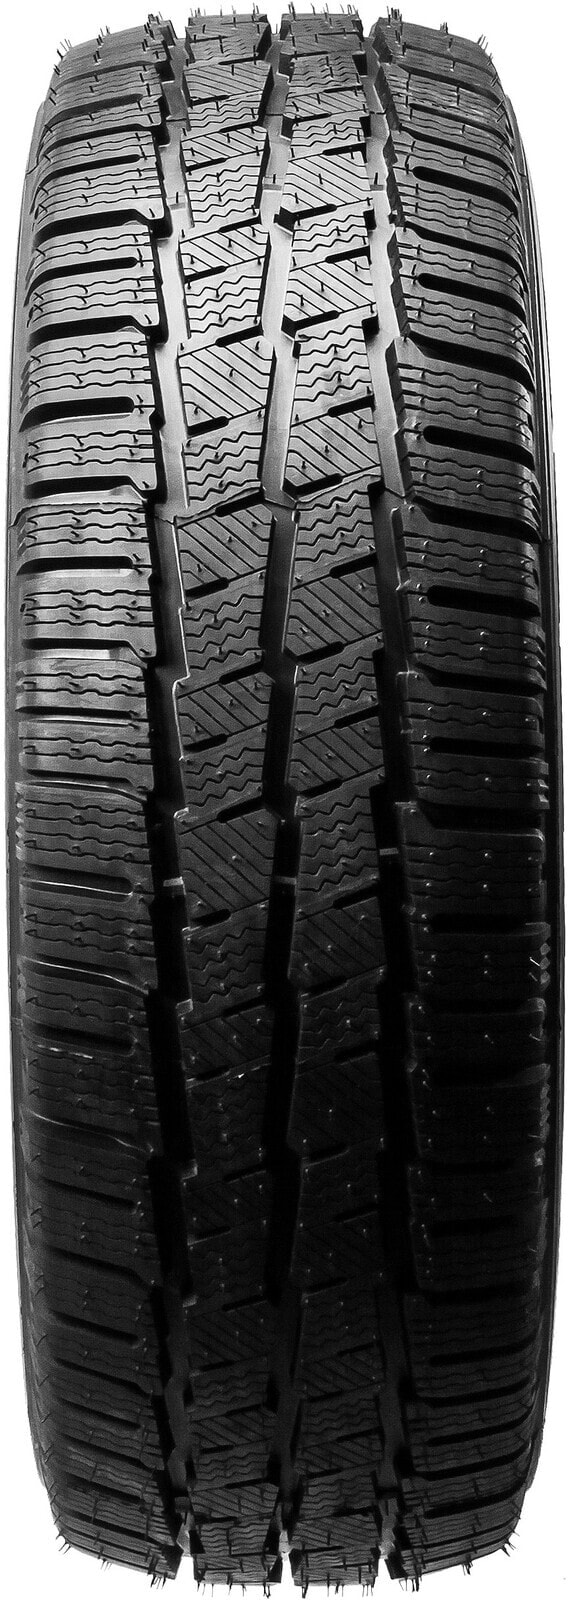 Шины для легких грузовых автомобилей зимние Michelin Agilis Alpin DOT16 195/75 R16 107/105R